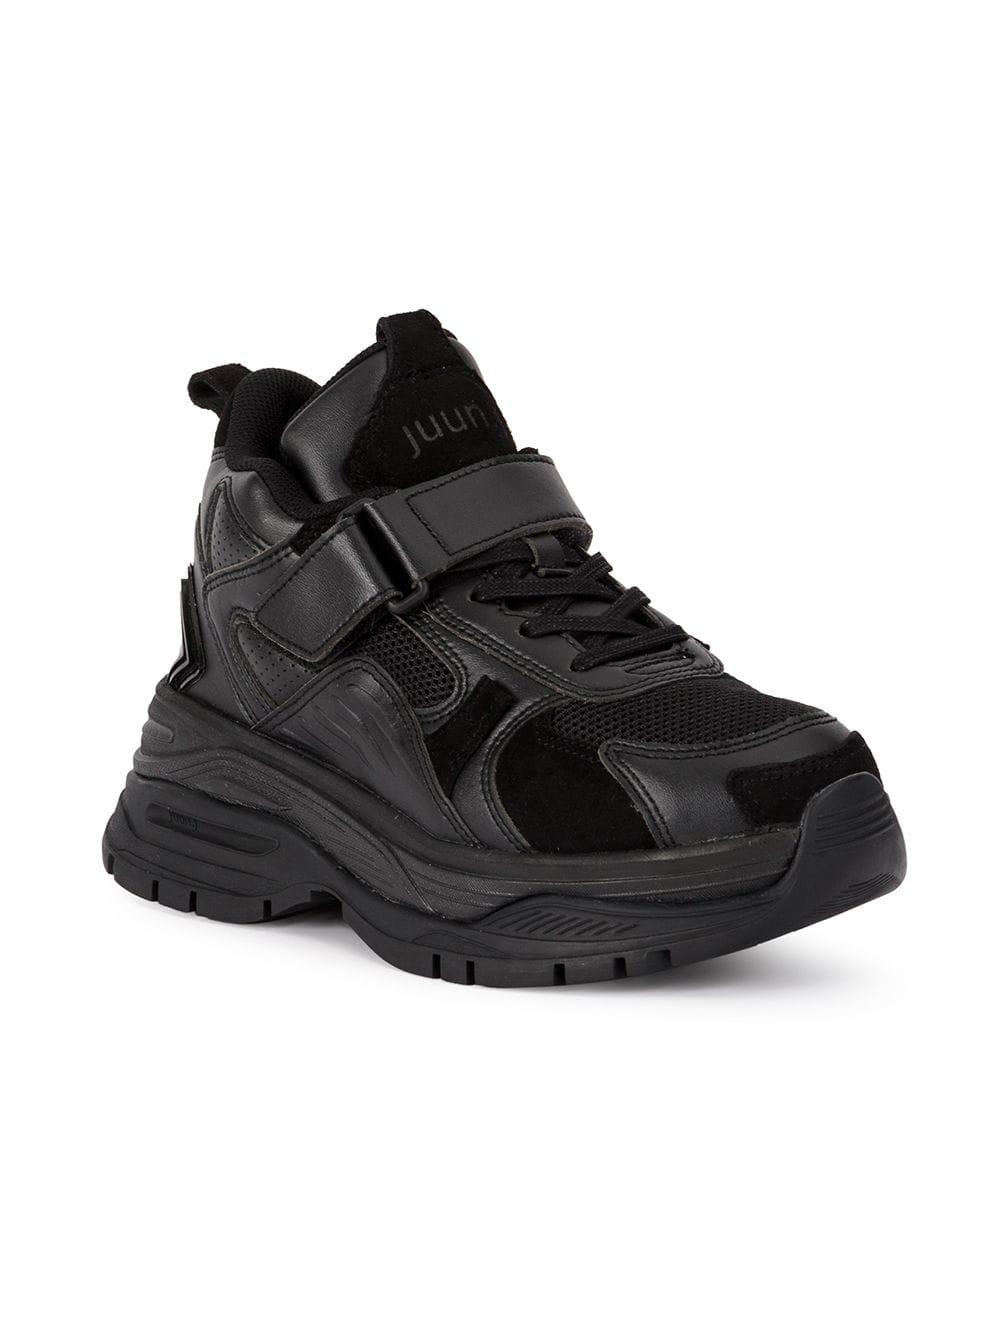 Juun.J Rubber Hi-top Sneakers in Black | Lyst